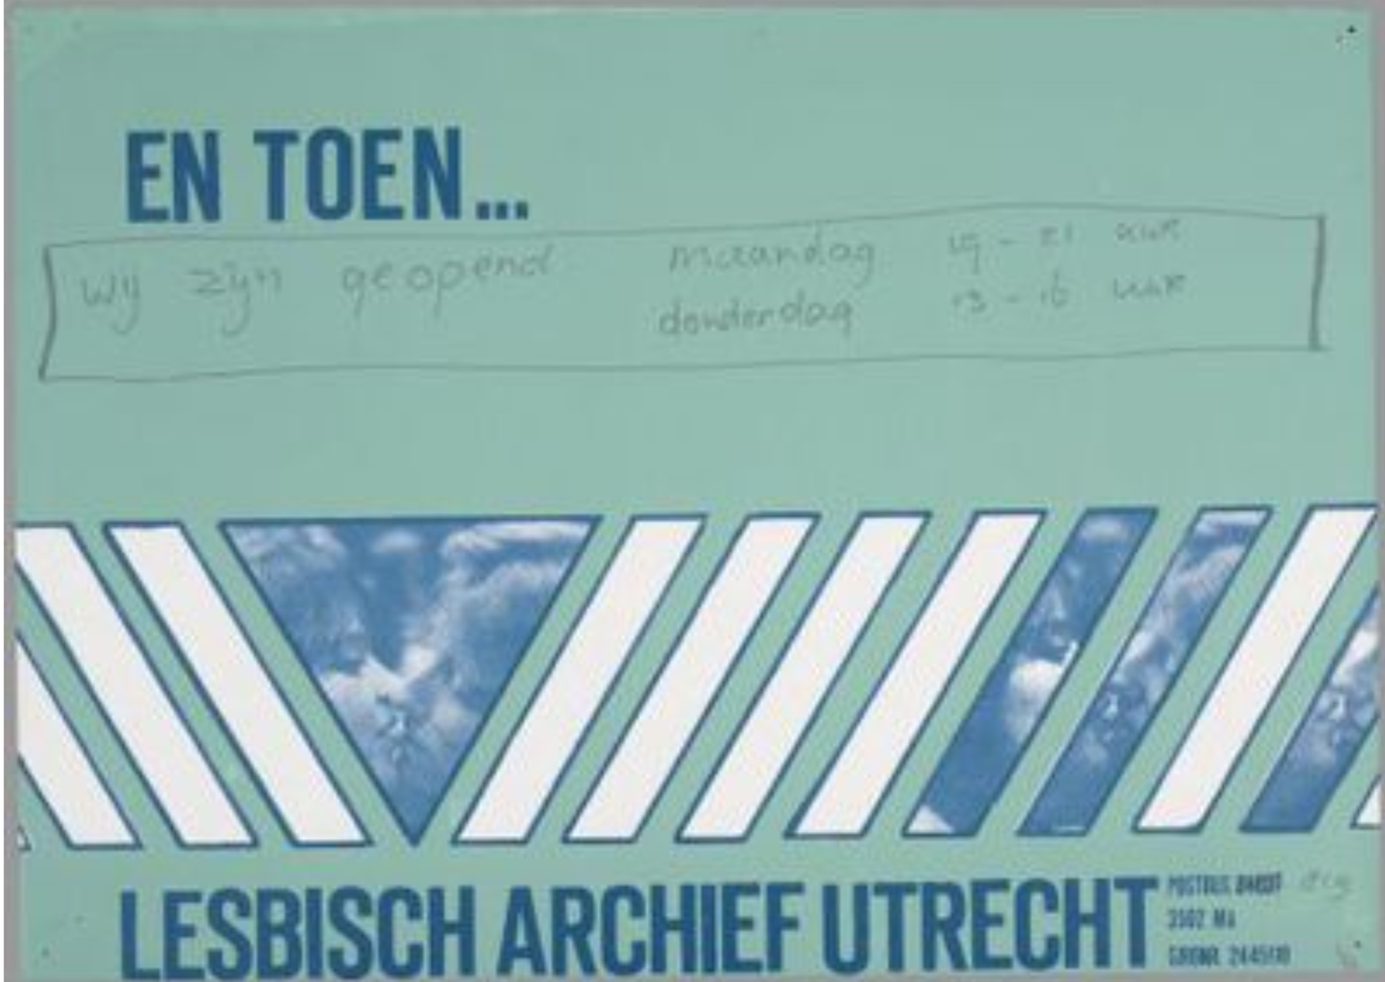 En toen, nieuwsbrief van het Lesbisch Archief Utrecht